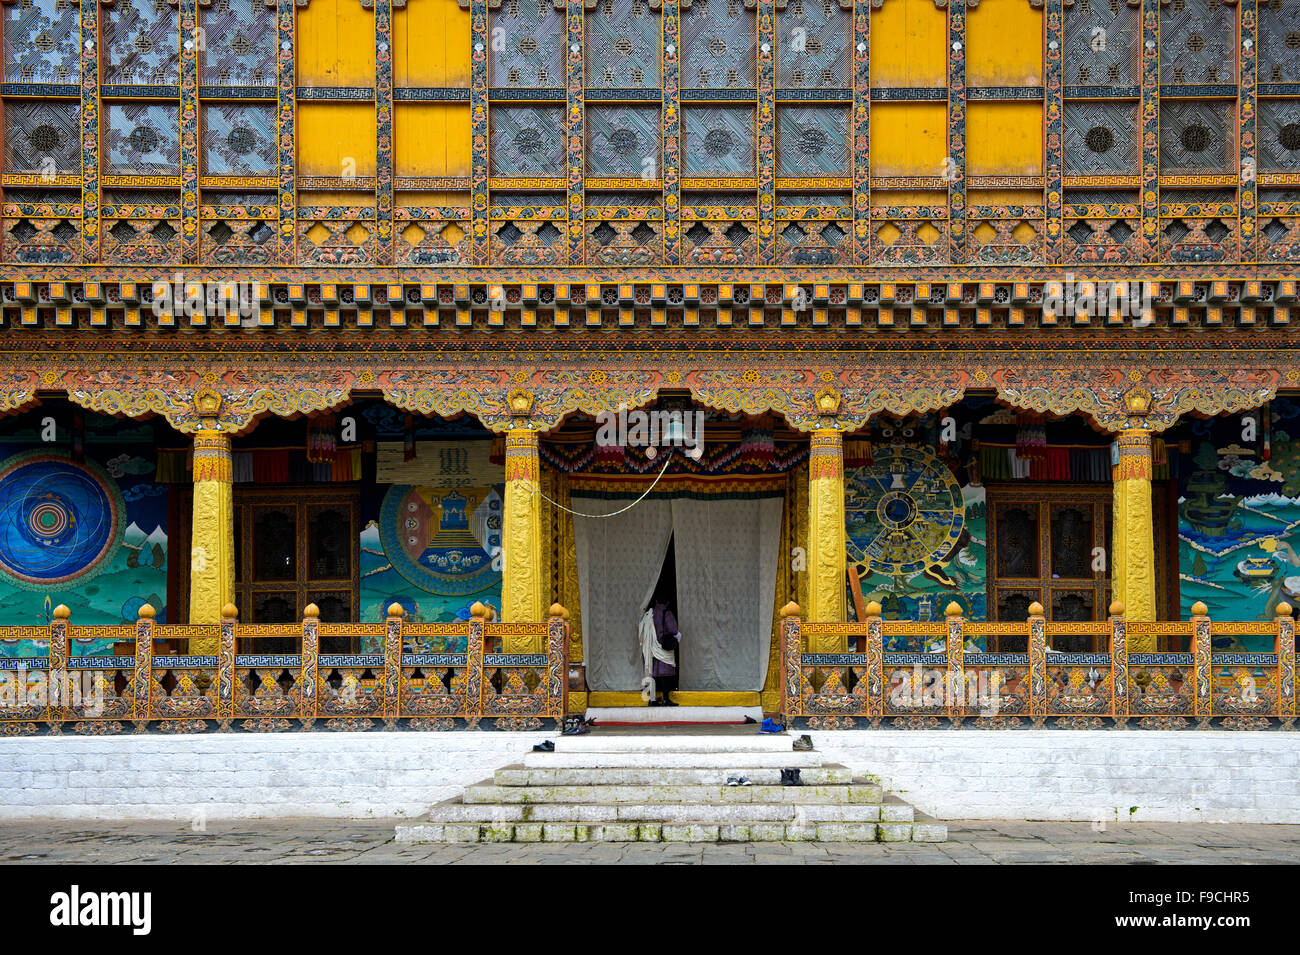 Uomo locale all'ingresso del tempio di incoronazione presso il monastero e fortezza di Punakha Dzong, Punakah, Bhutan Foto Stock